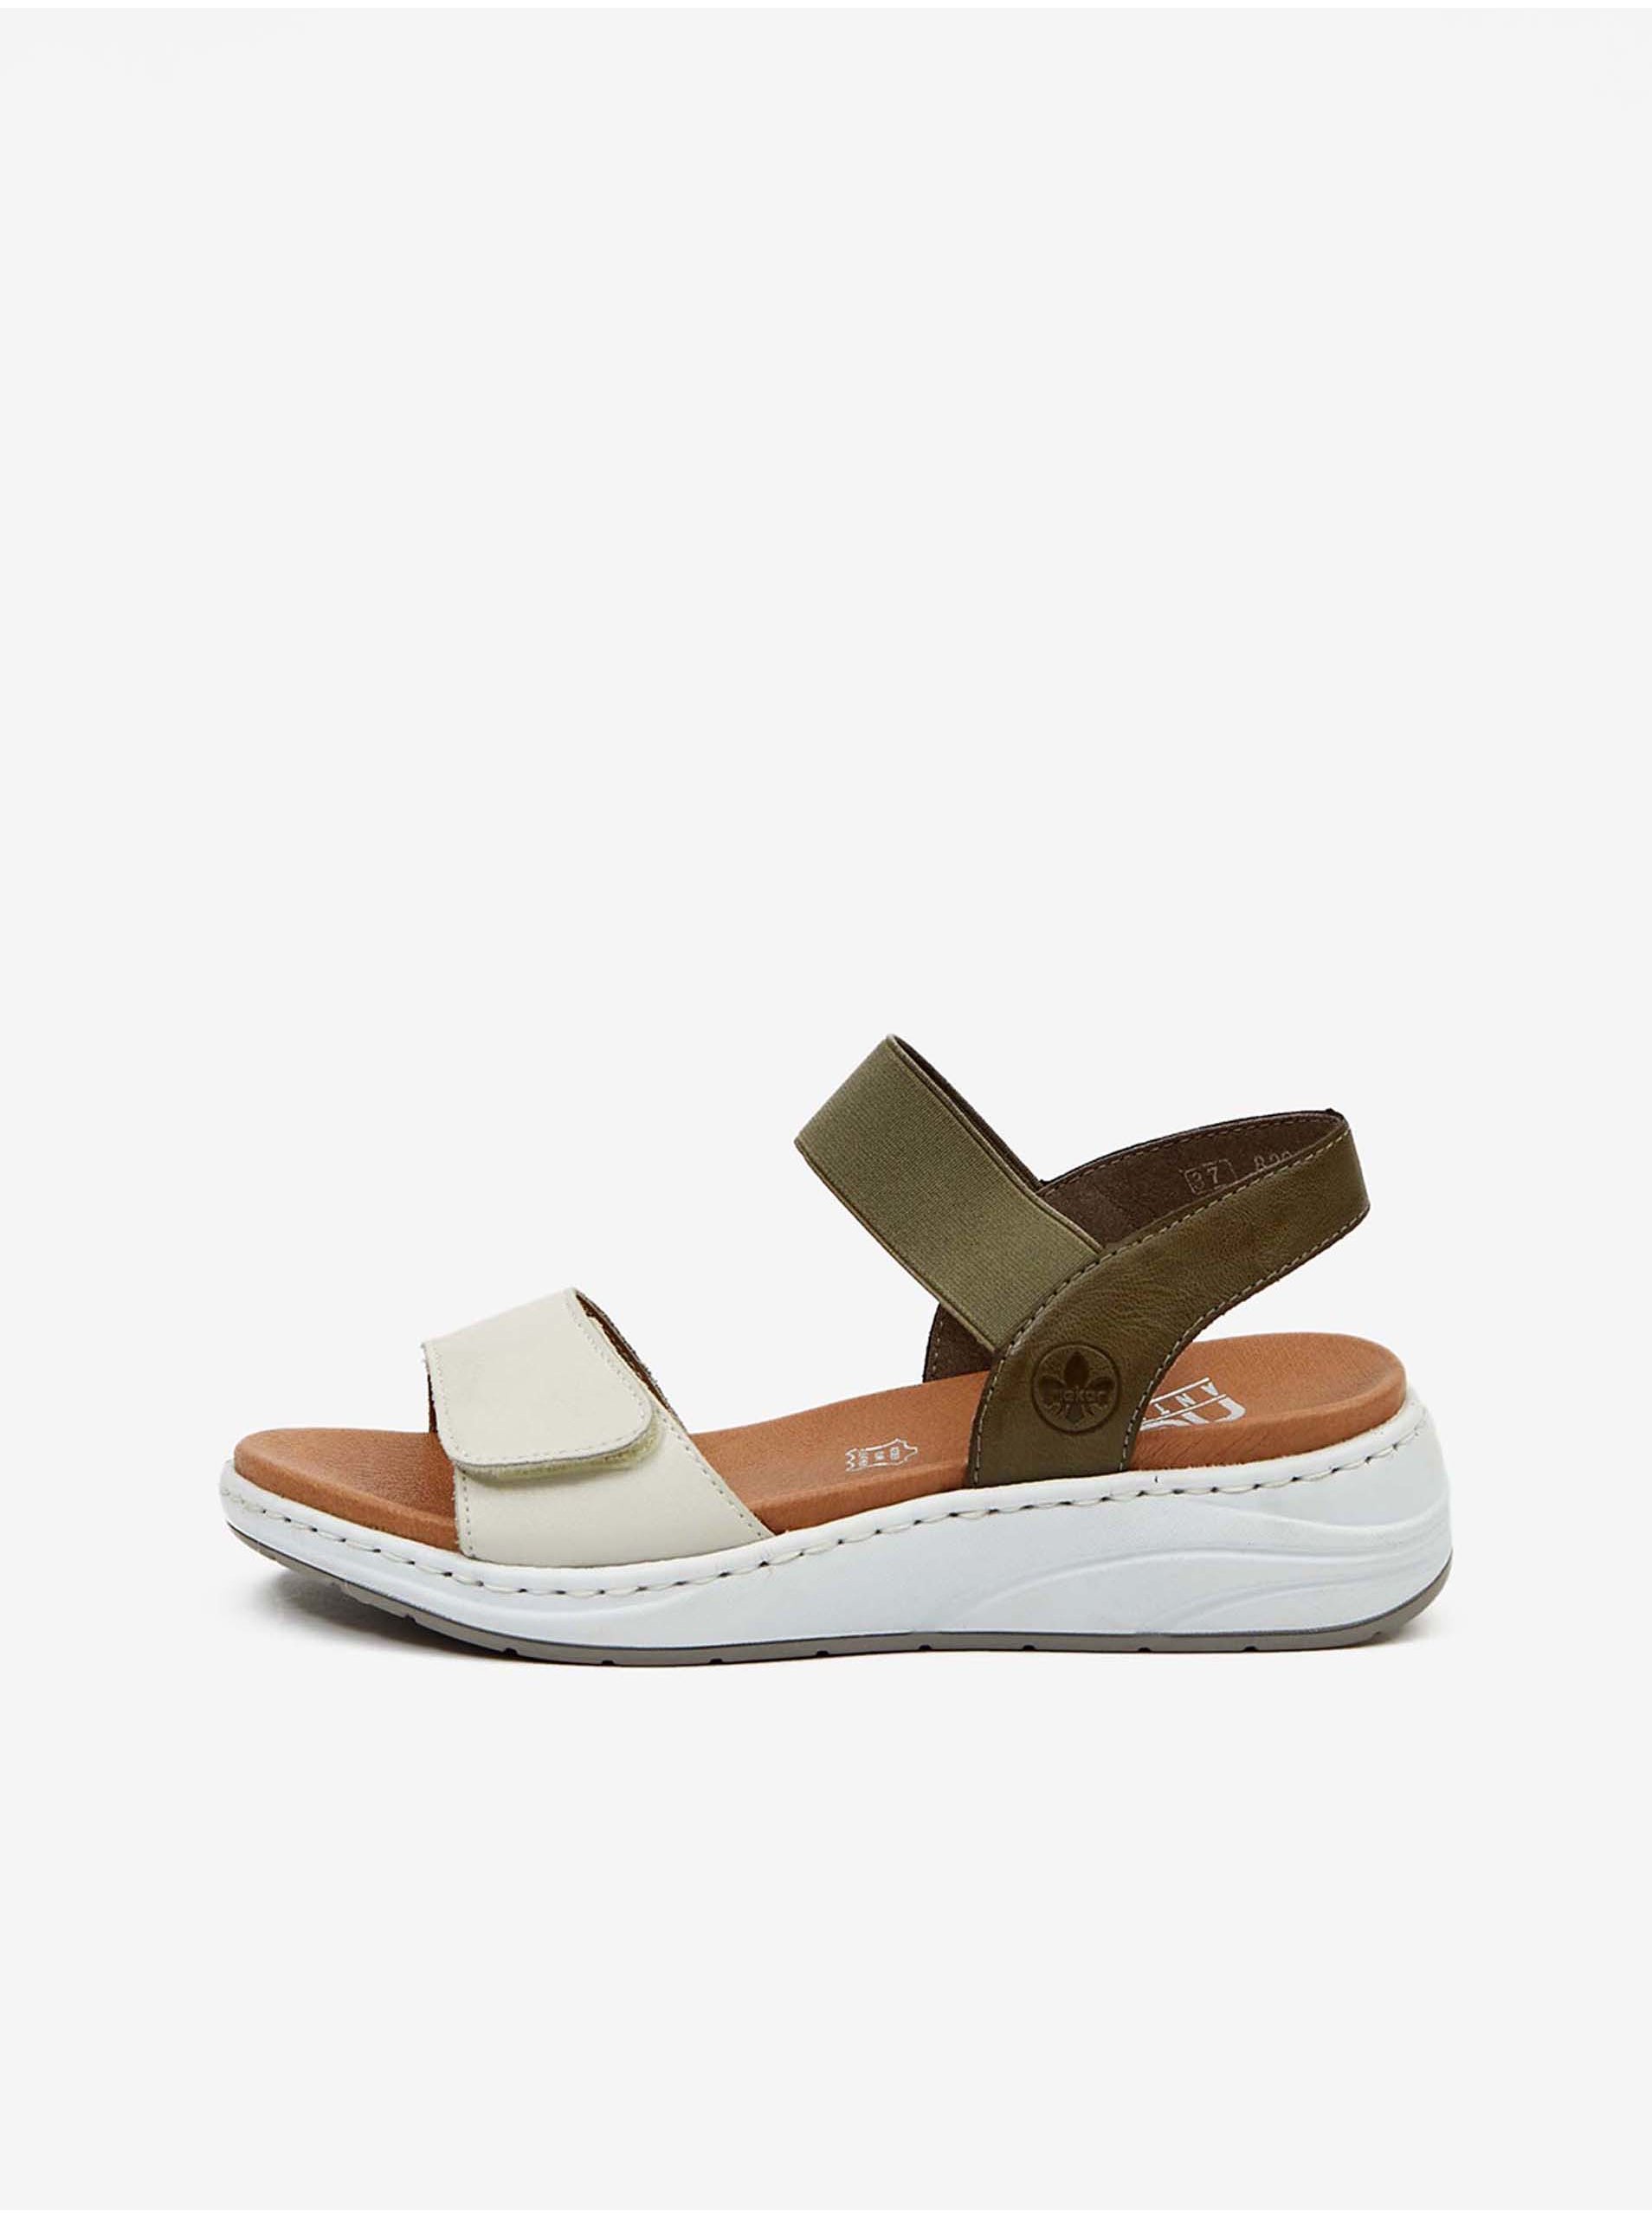 Lacno Kaki-biele dámske kožené sandále Rieker